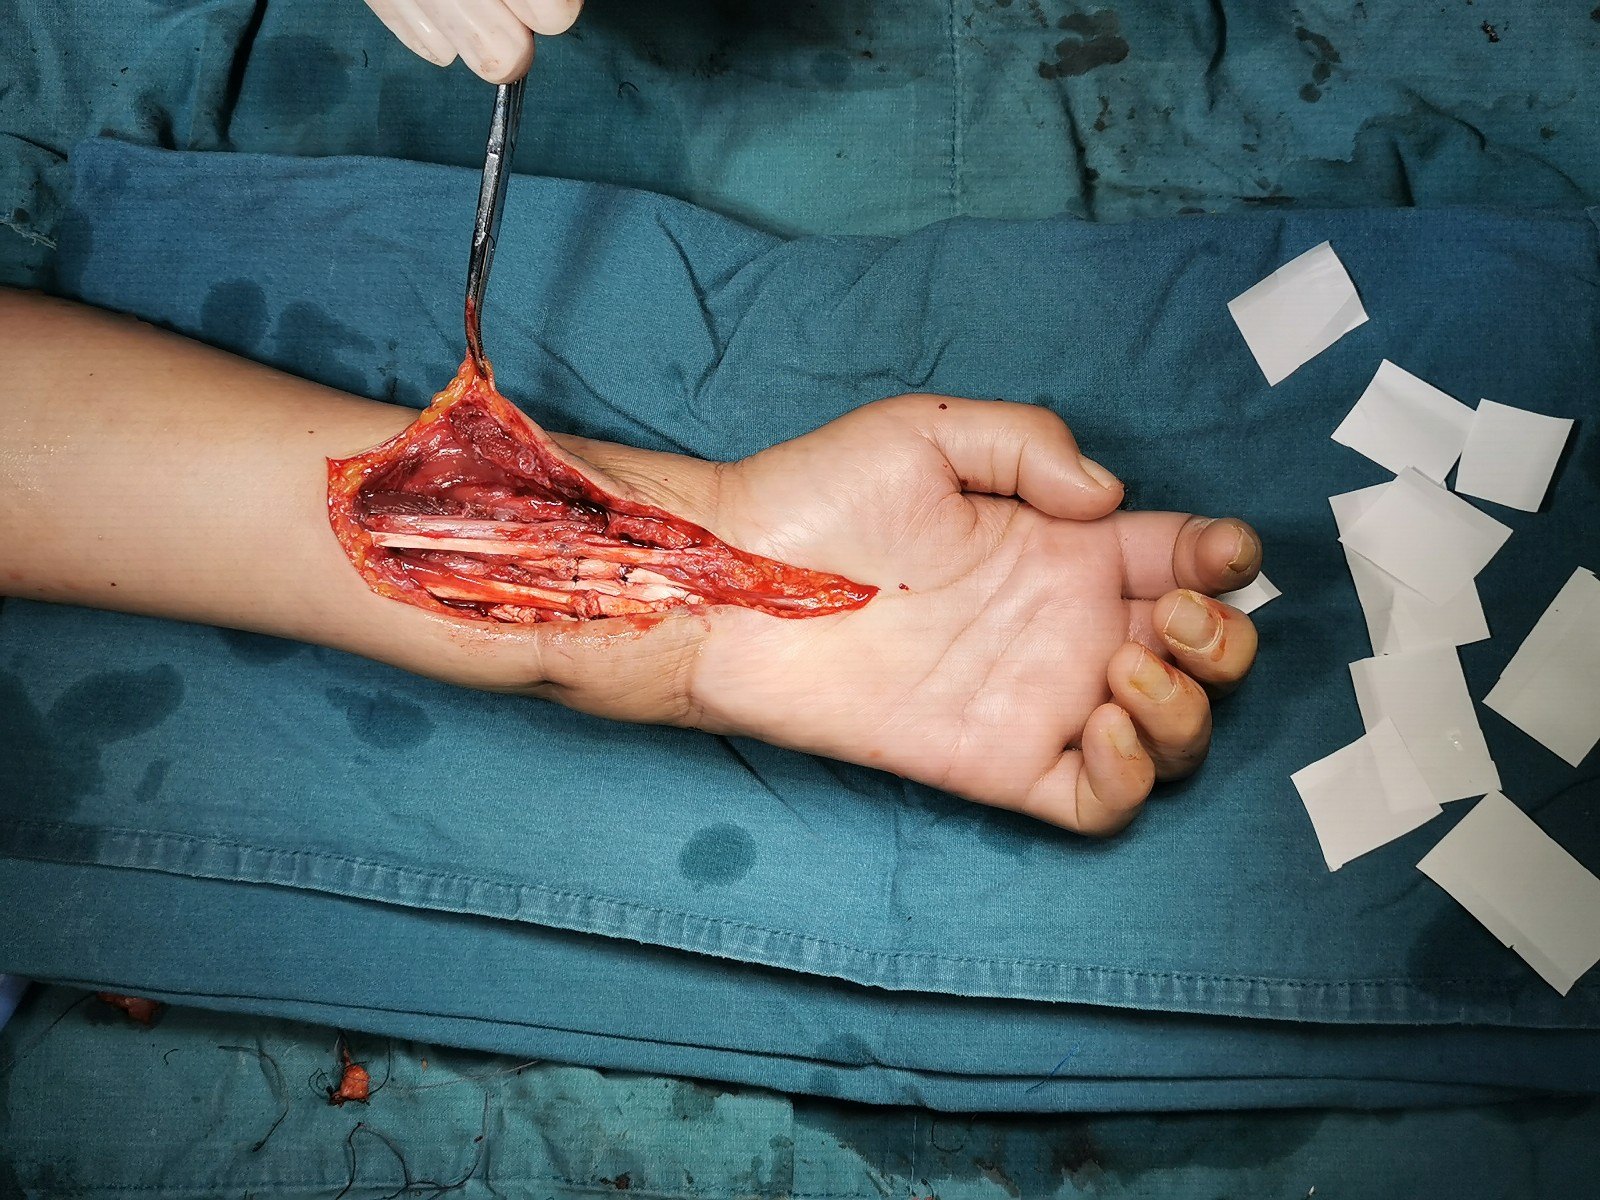 经验分享:如何处理腕部切割伤 